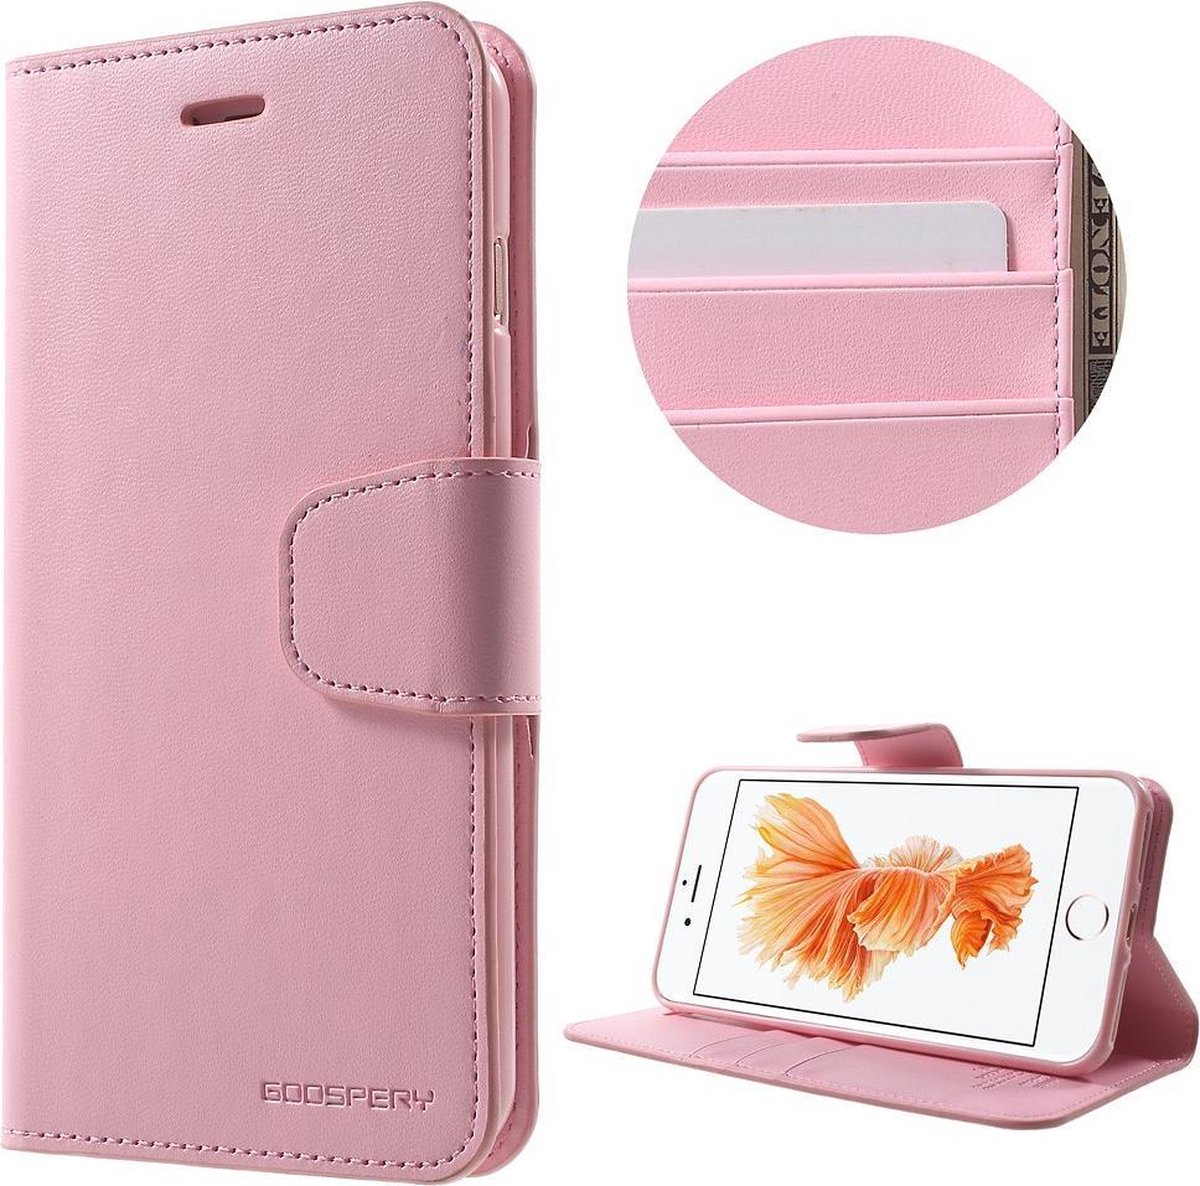 Zacht roze luxe bookcase voor iPhone 7 plus / 8 plus - ROZE - GOOSPERY